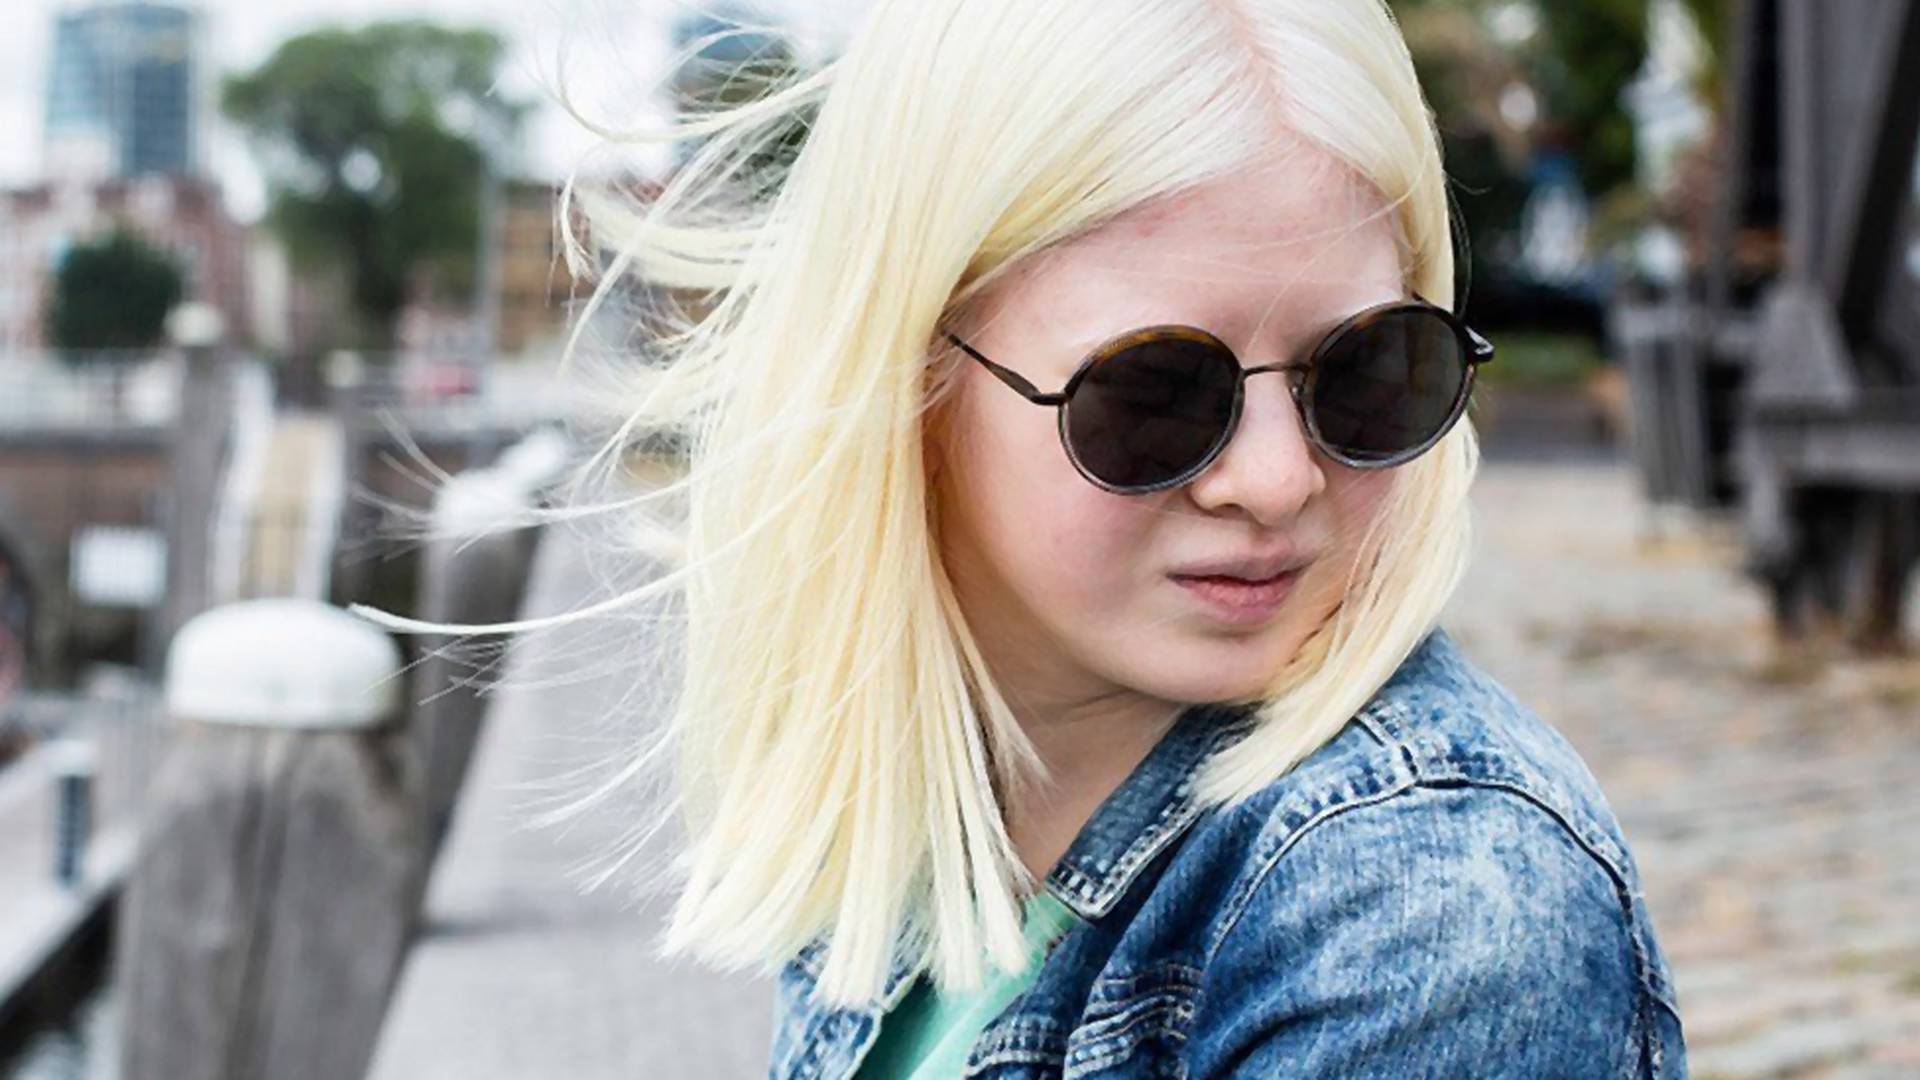 Roditelji su mislili da je prokleta zato što je rođena kao albino i ostavili je ispred sirotišta, a danas pozira za Vogue